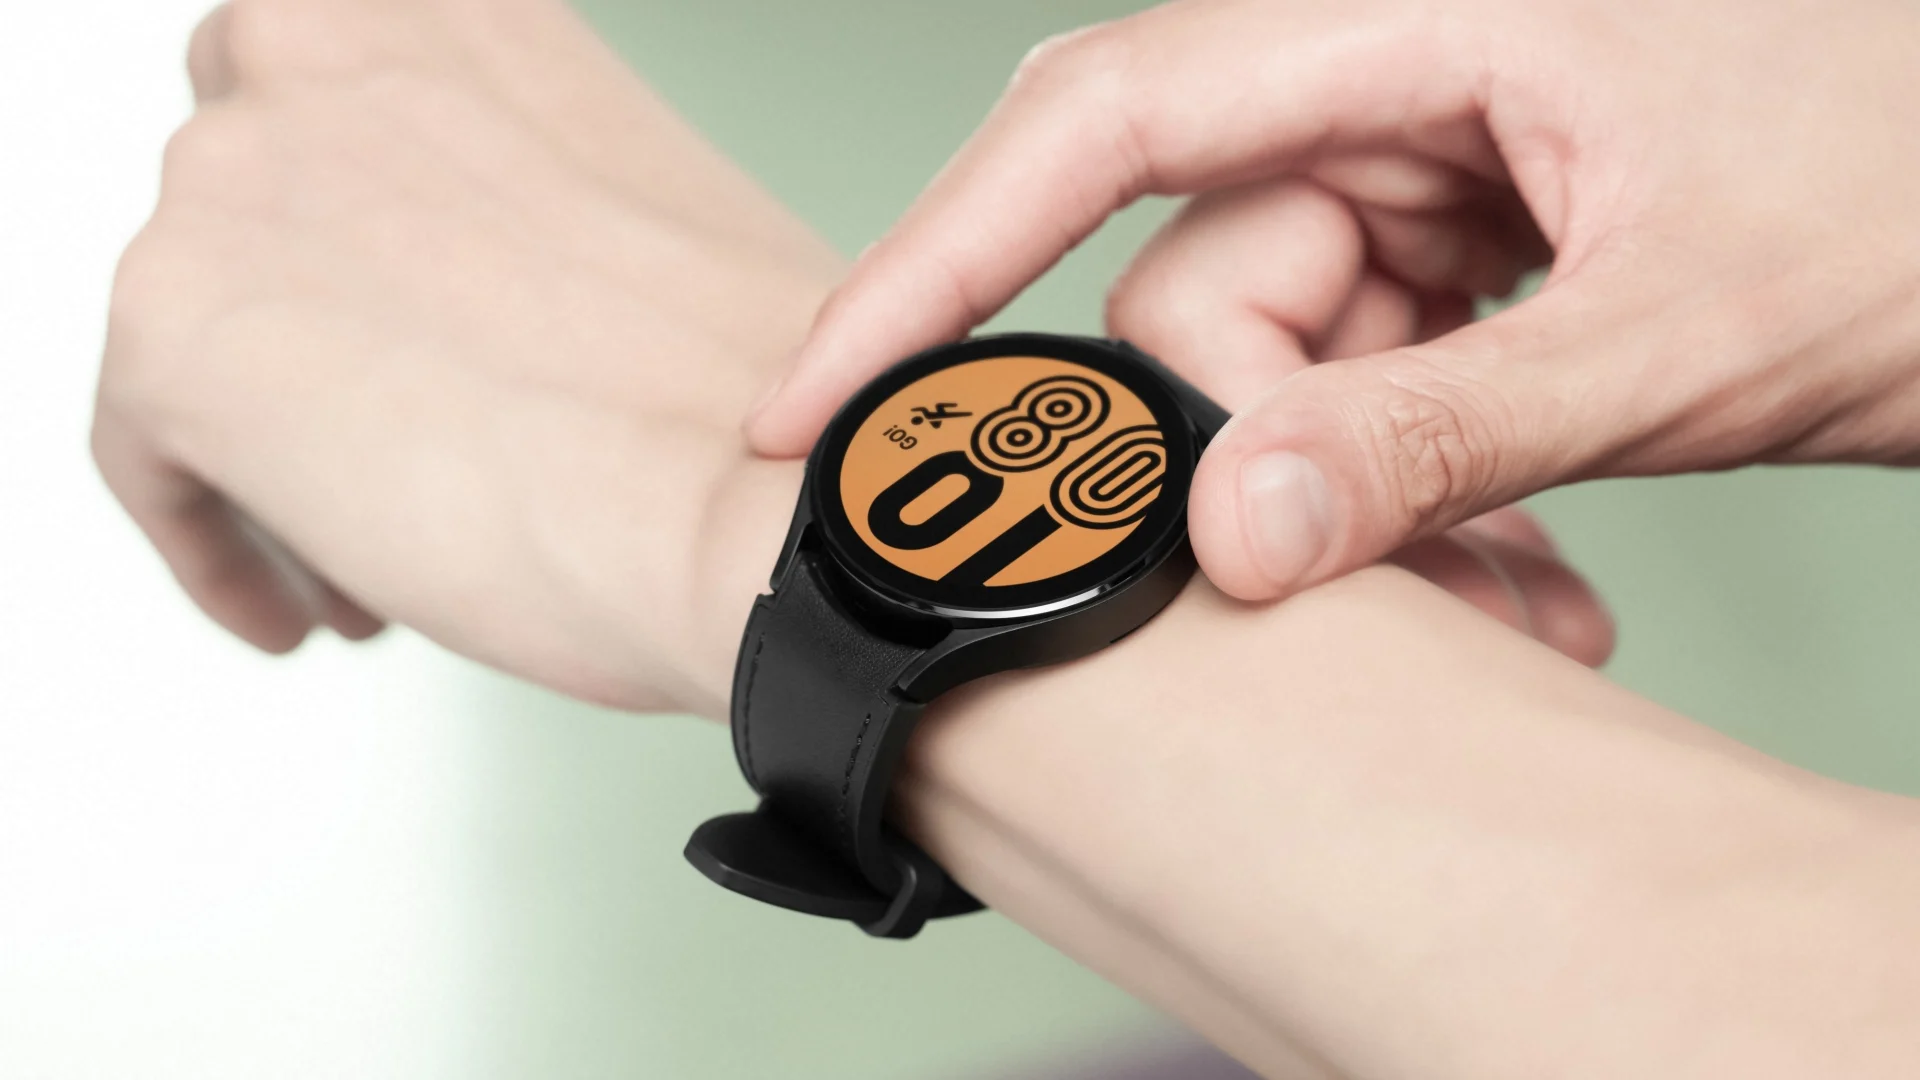 Galaxy Watch4: Thiết bị đeo tay Galaxy Watch4 mới nhất của Samsung sẽ đem lại trải nghiệm đầy thú vị cho bạn. Đồng hồ thông minh này được tích hợp nhiều tính năng hiện đại và bắt mắt, giúp bạn dễ dàng quản lý thời gian và tăng cường sức khỏe. Hãy xem hình ảnh liên quan để cùng khám phá những tính năng độc đáo của Galaxy Watch4 nhé.